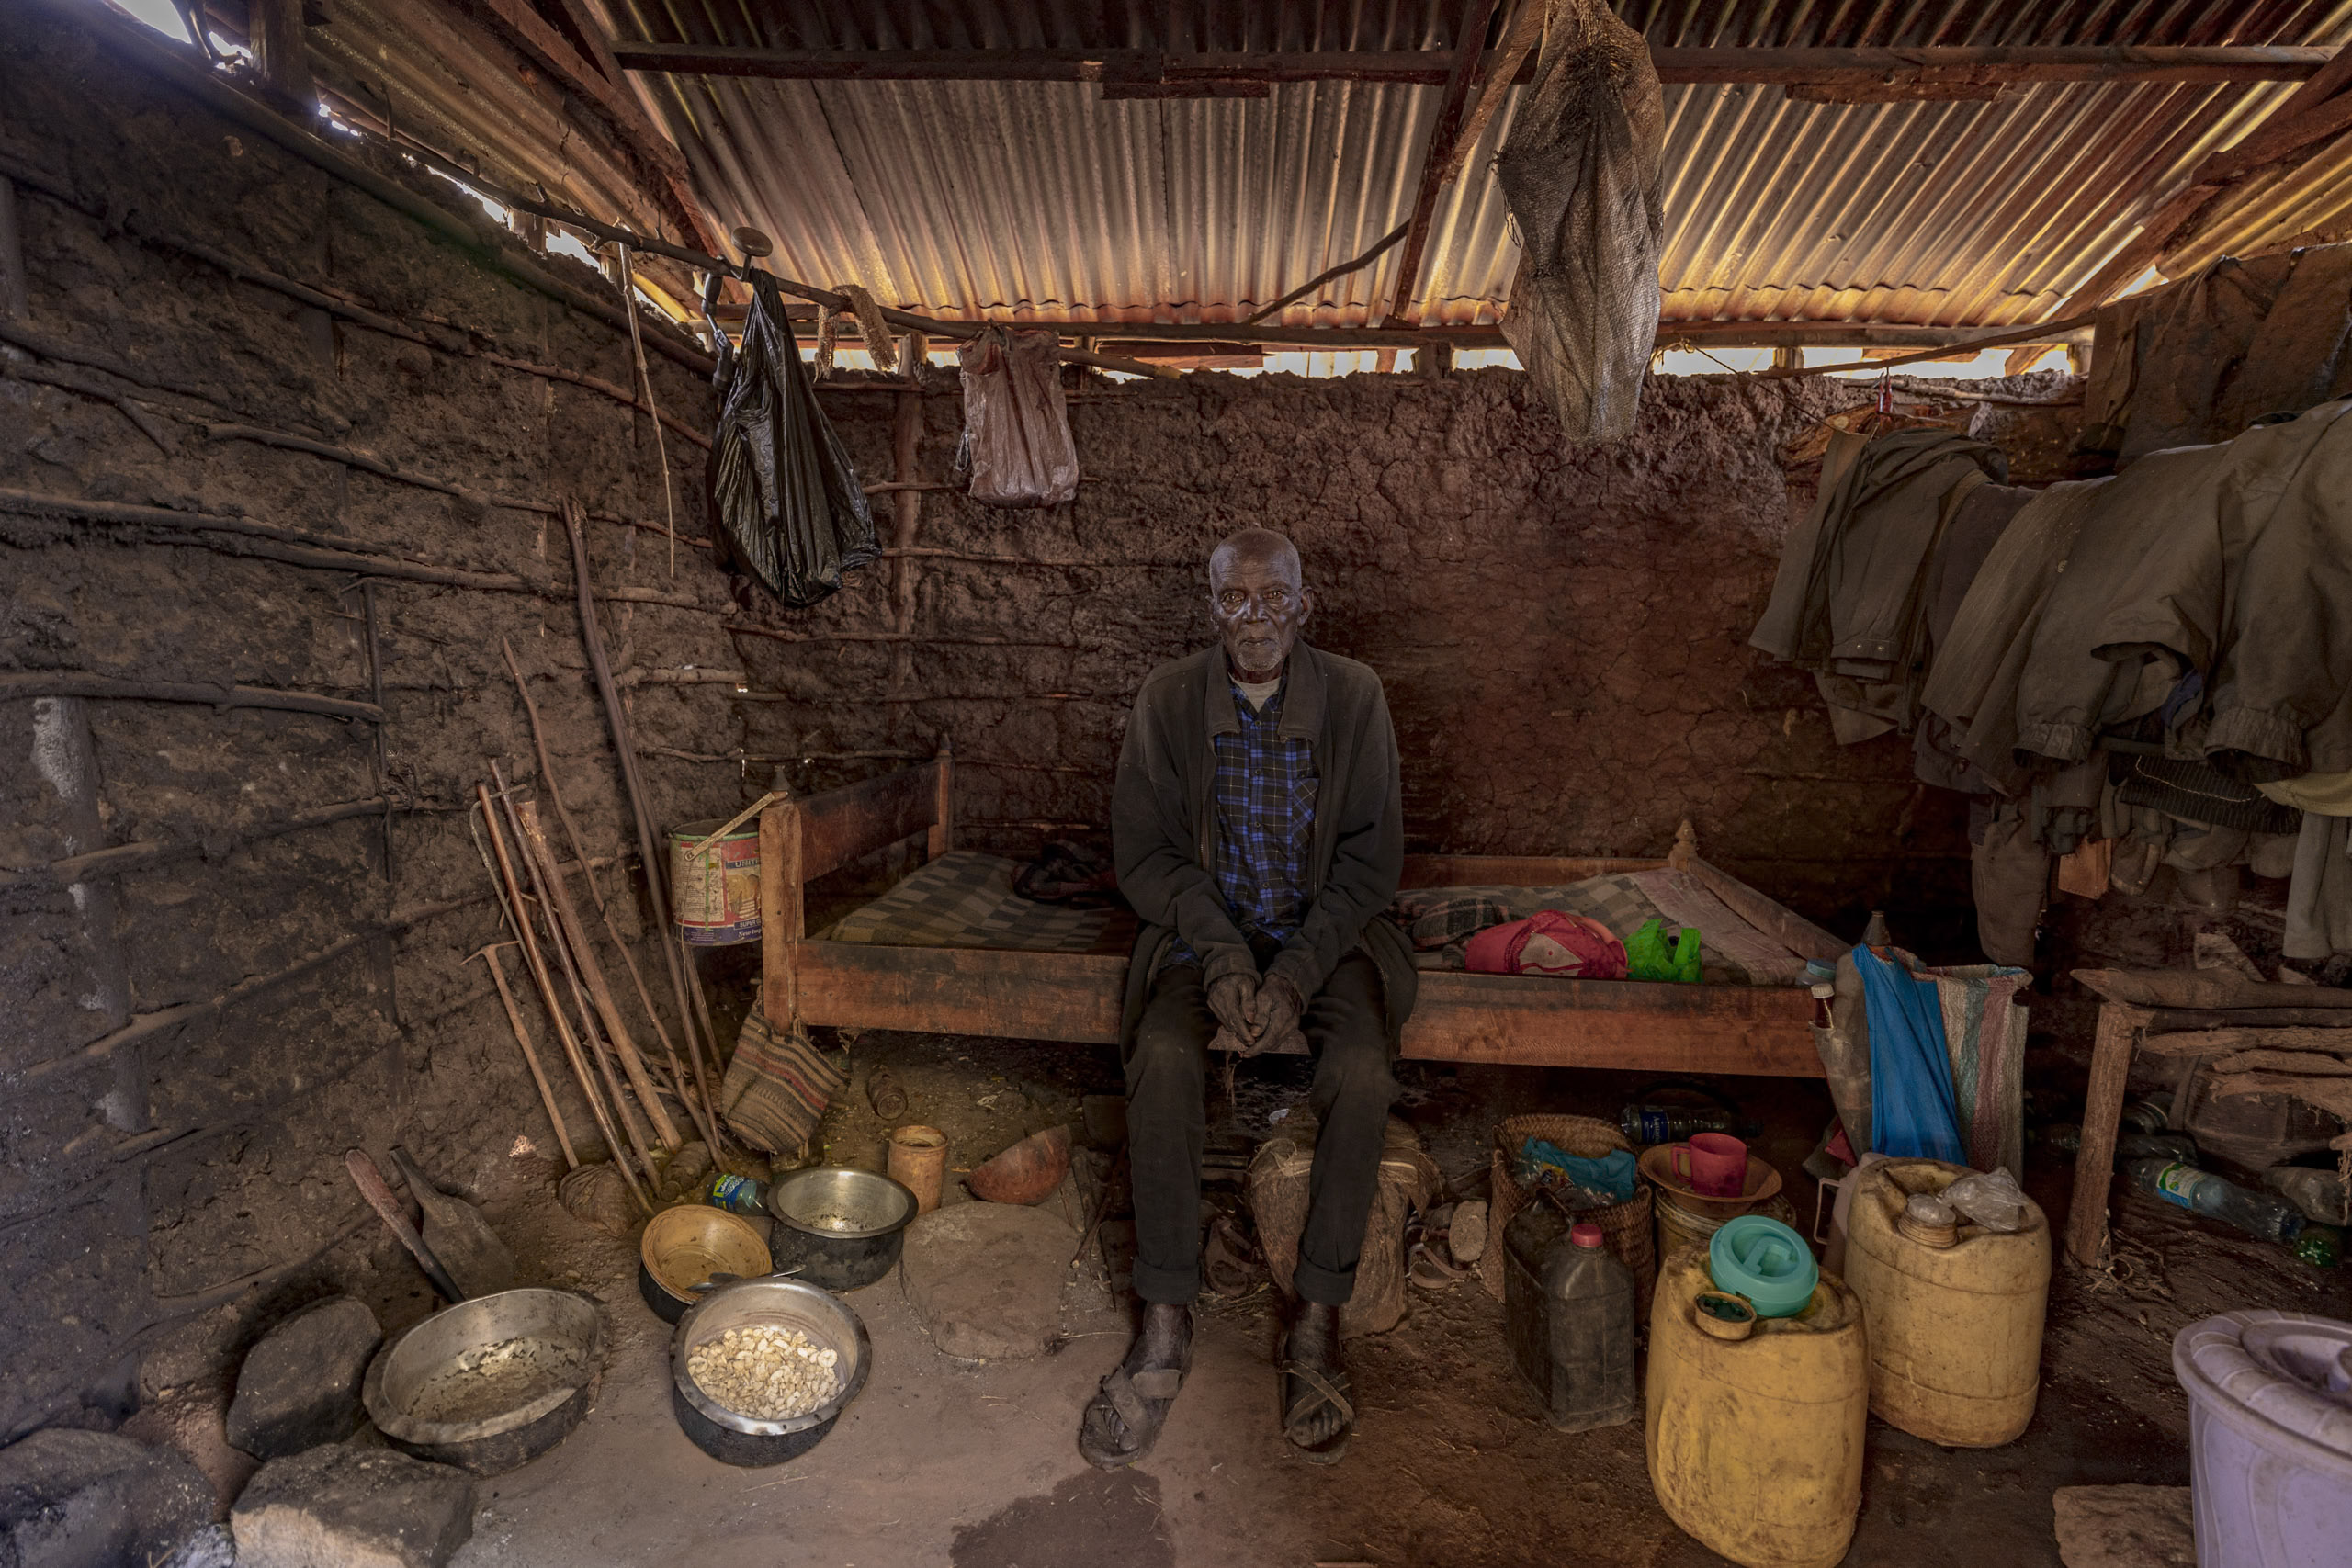 Ein älterer Mann sitzt auf einer Bank in einer rustikalen Küche mit Lehmwänden und einem Wellblechdach. Verschiedene Töpfe, Utensilien und Behälter sind im Raum verstreut. © Fotografie Tomas Rodriguez